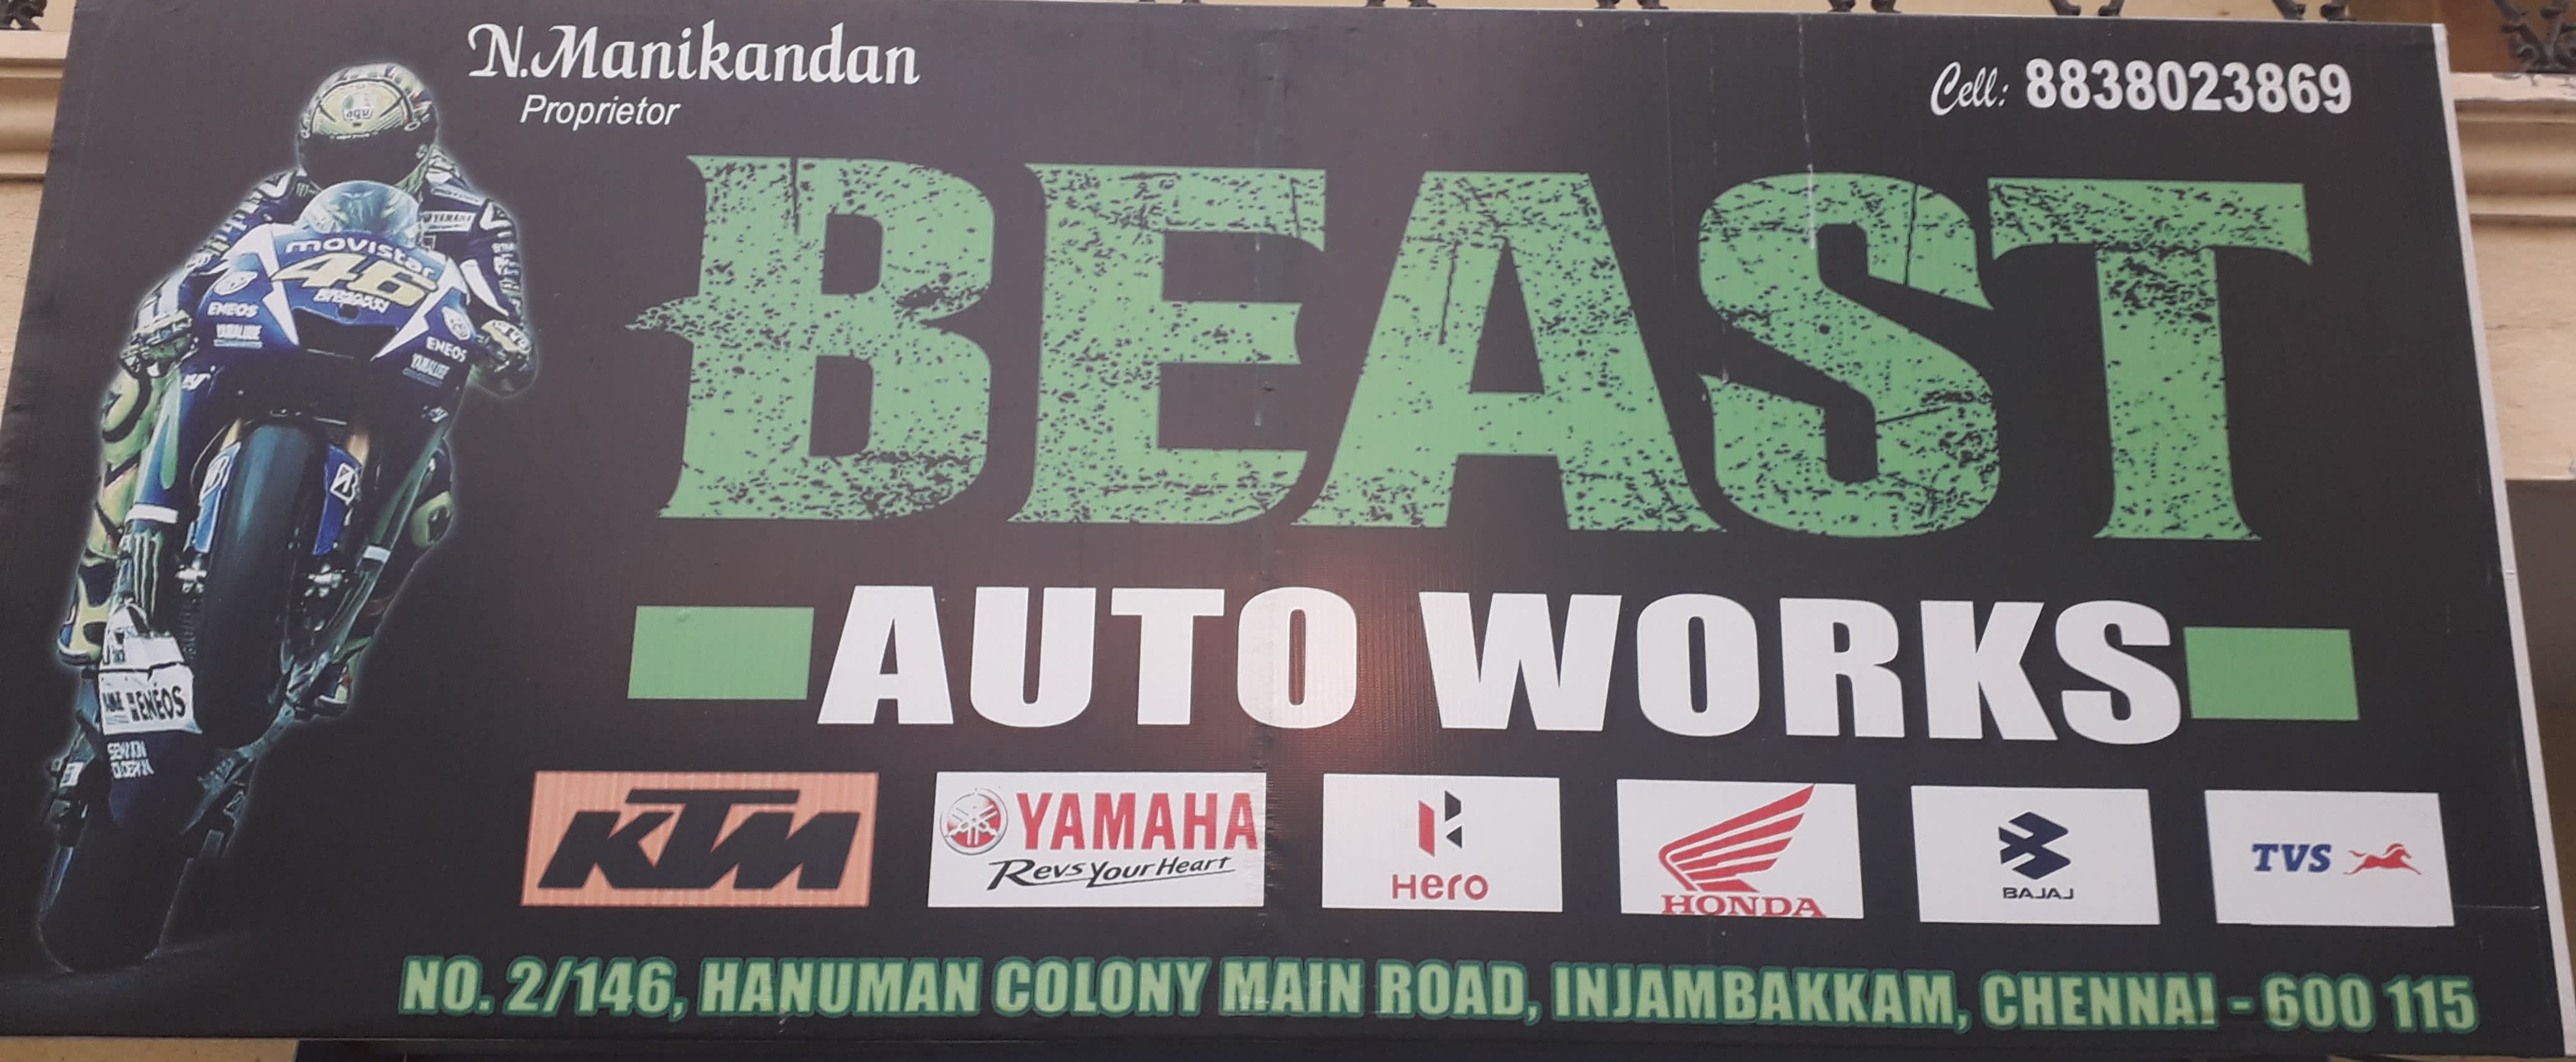 Beast Auto Works